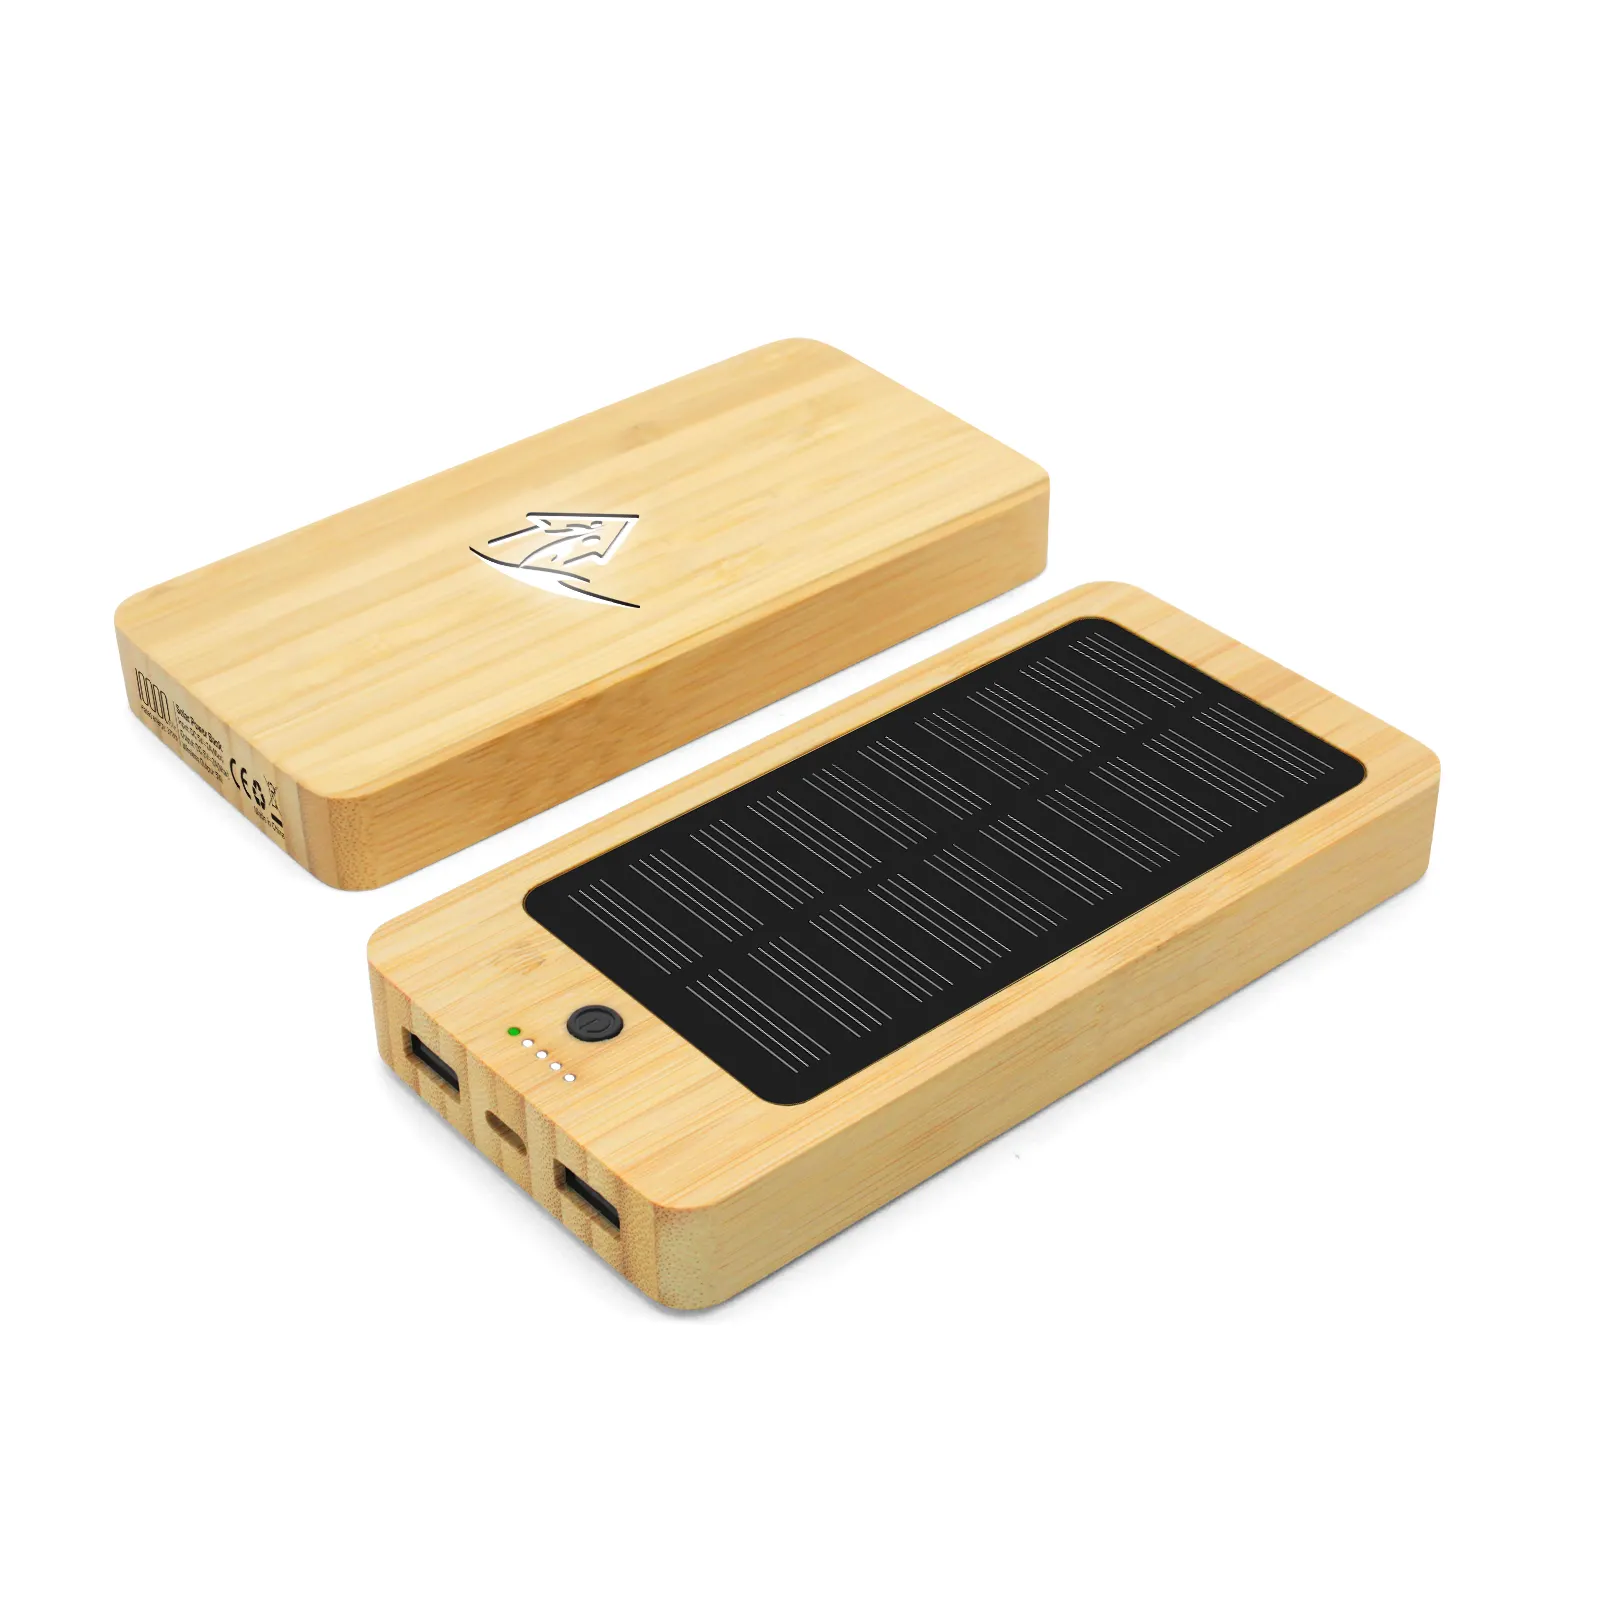 Banco de energía Solar de madera de bambú, respetuoso con el medio ambiente, 10000mAH, se ilumina, carga rápida, batería externa para Iphone y Android